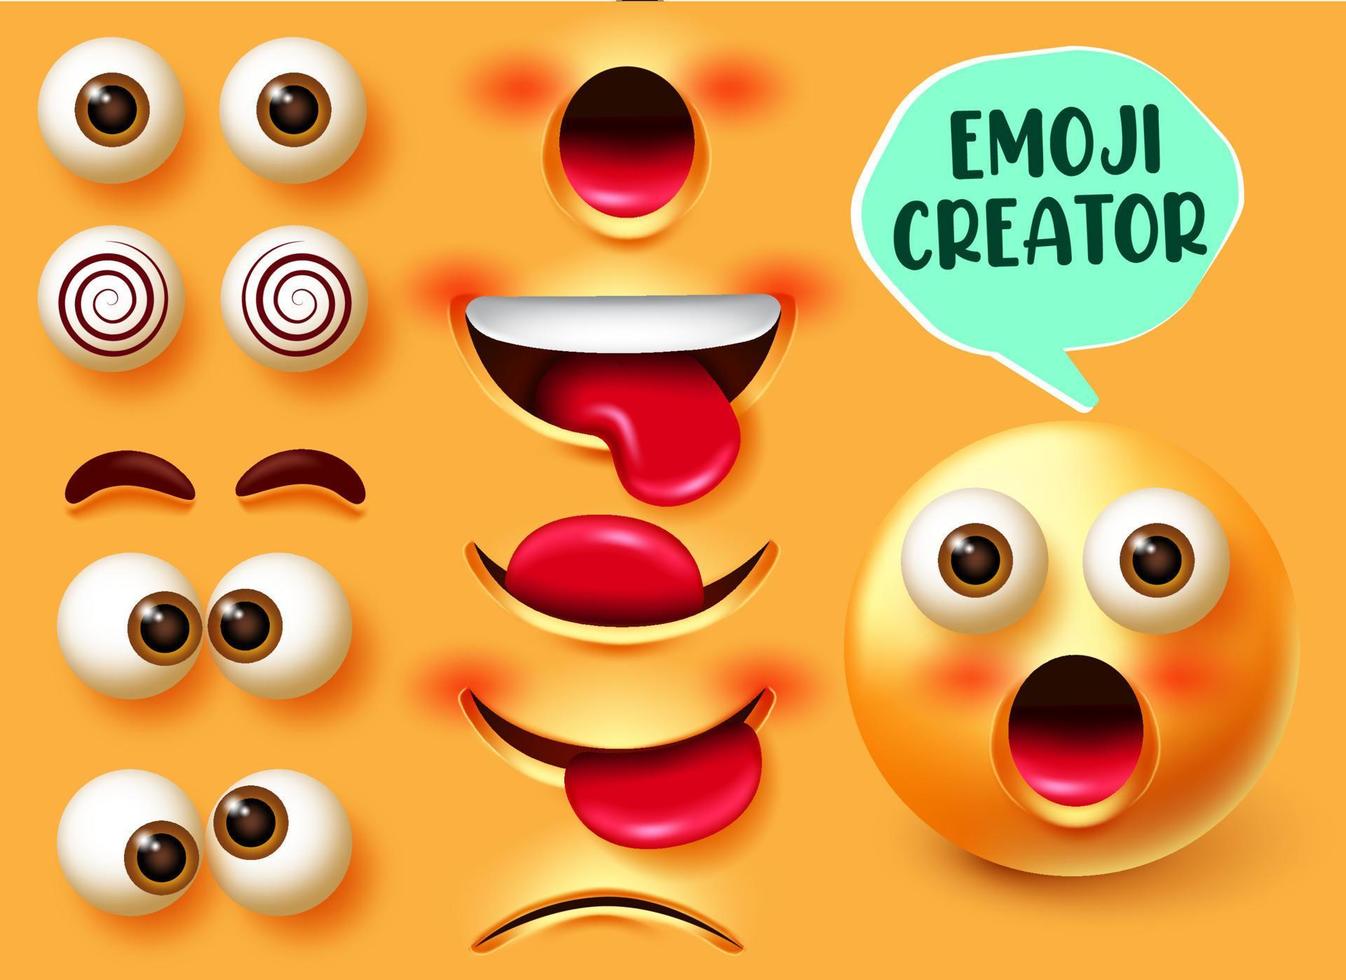 Emoji-Ersteller-Vektor-Set. Emojis 3D-Charakter-Kit in Gesichtsausdrücken überrascht mit bearbeitbaren Gesichtselementen wie Augen und Mund für Emoticon-Gesichtsdesign. Vektor-Illustration vektor